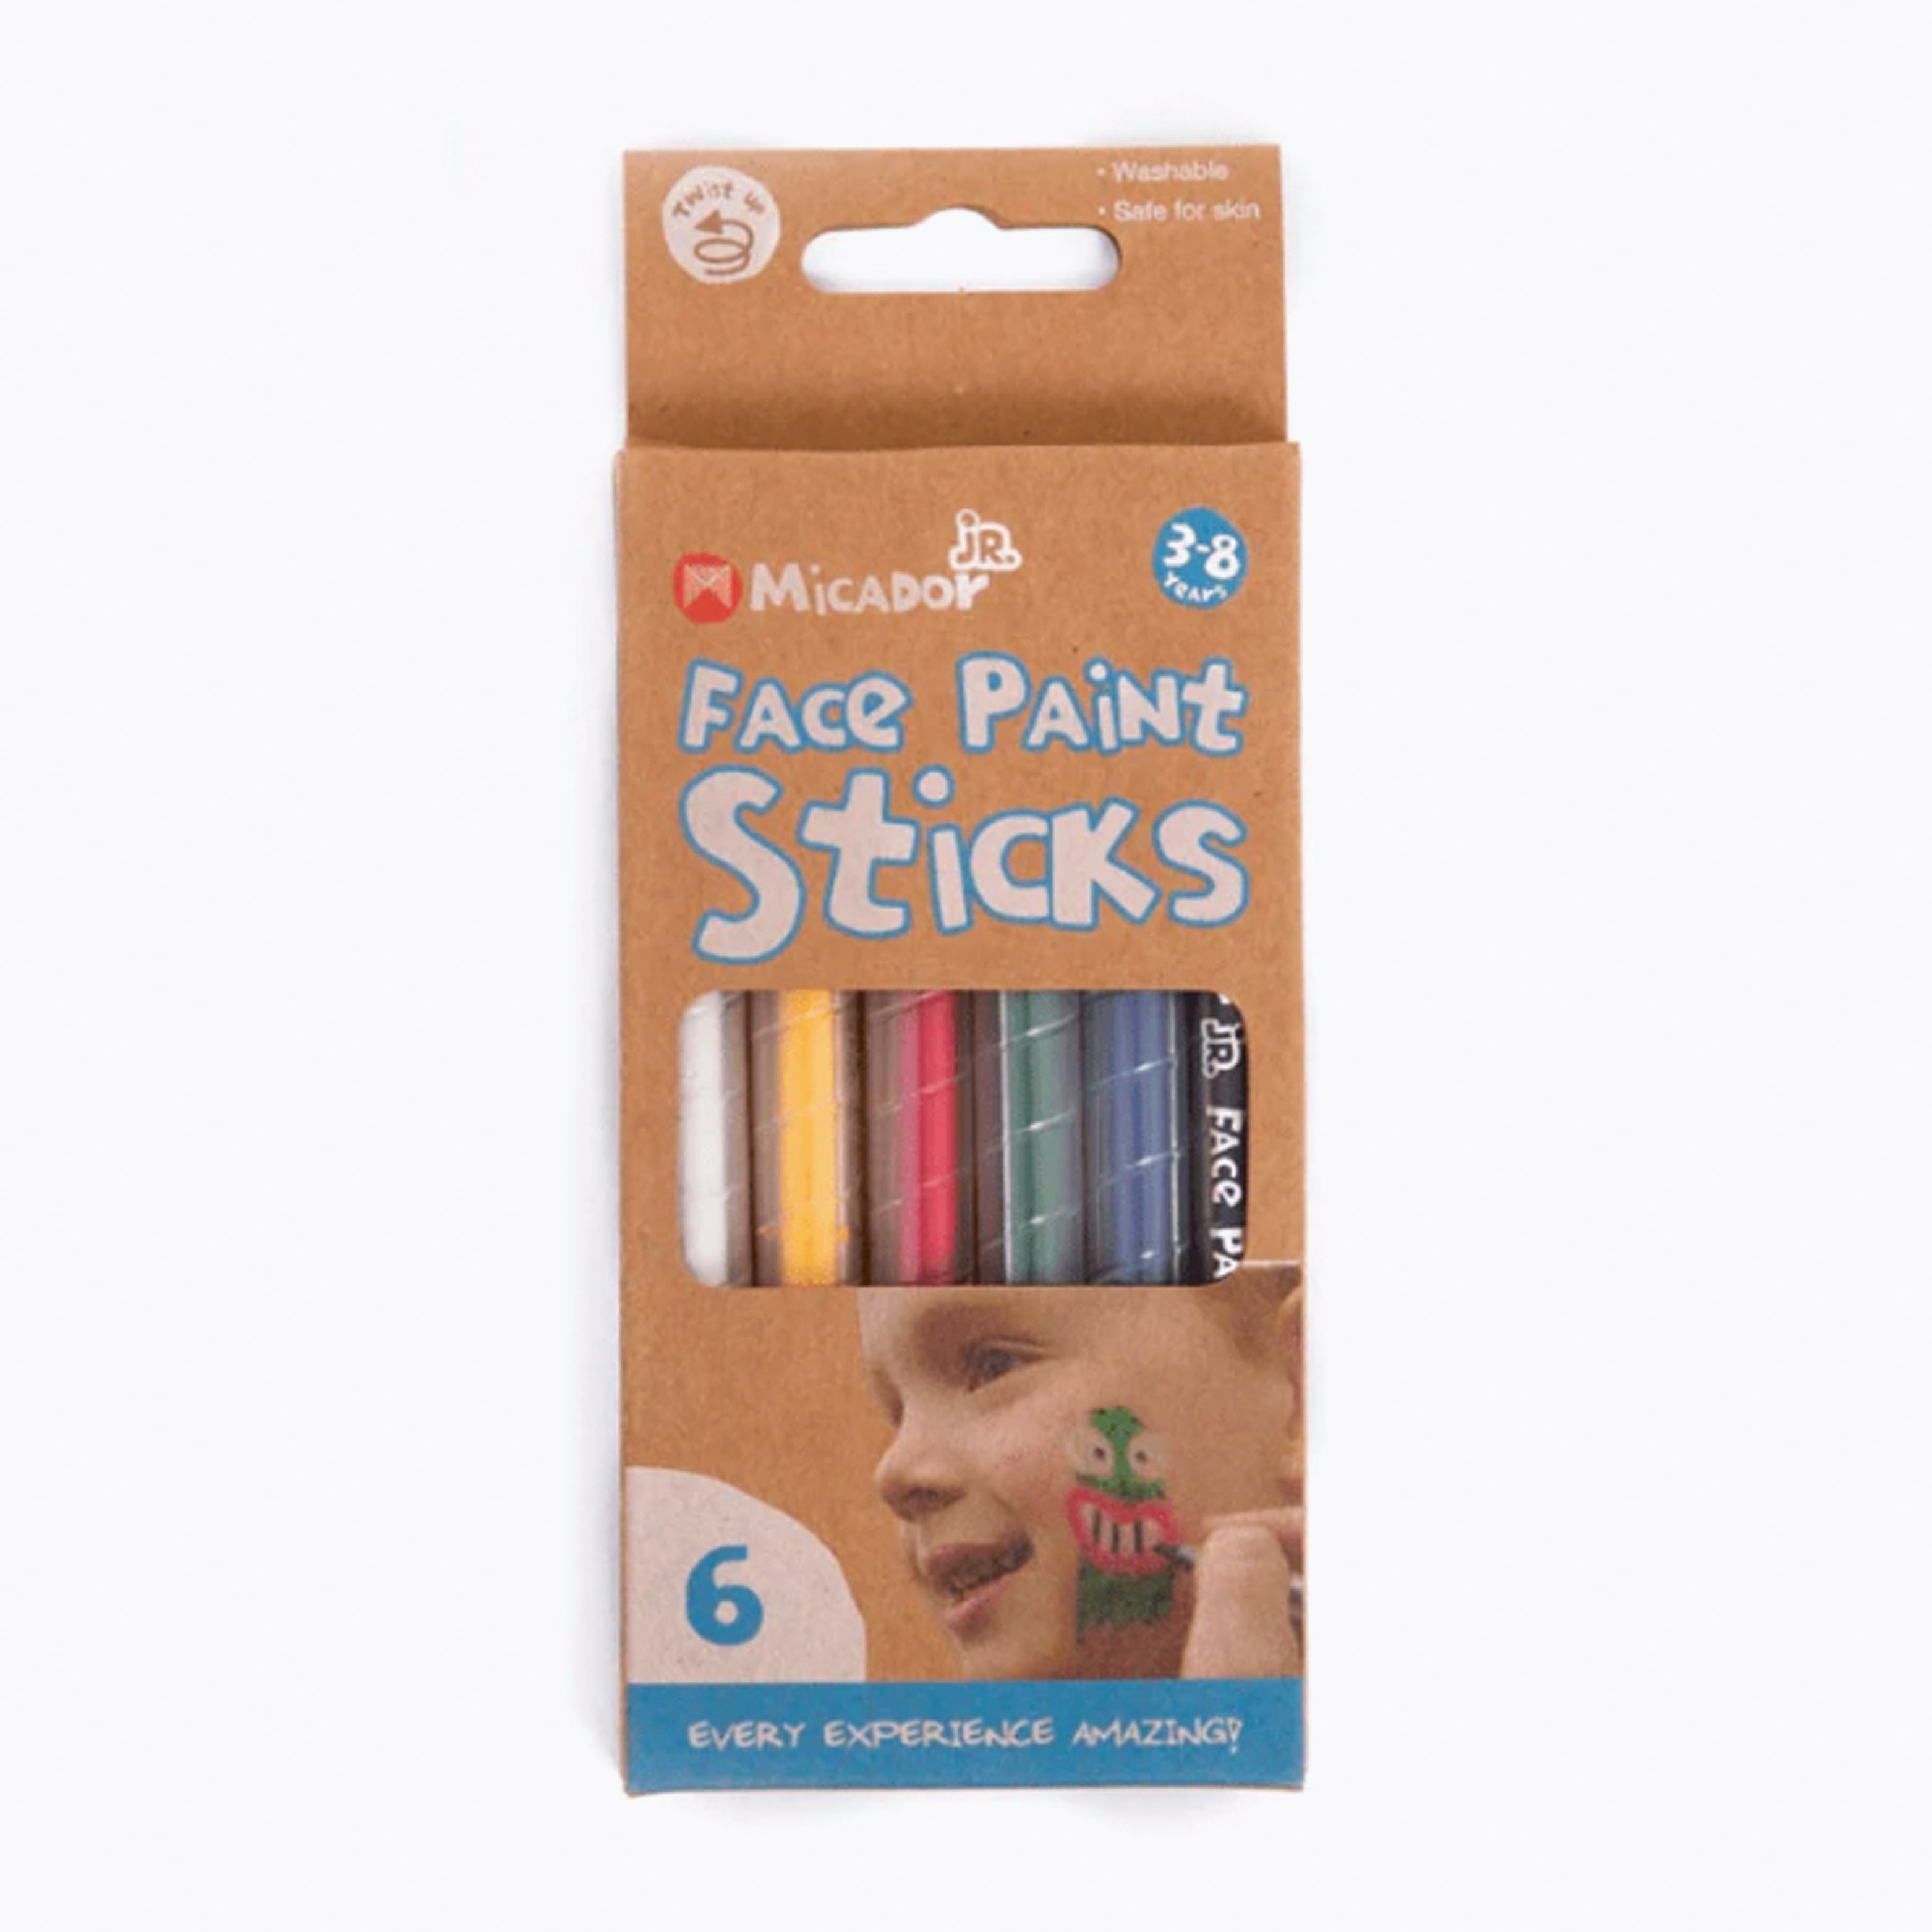 An image of Micador - jR Face Paint Sticks - Small Smart UK